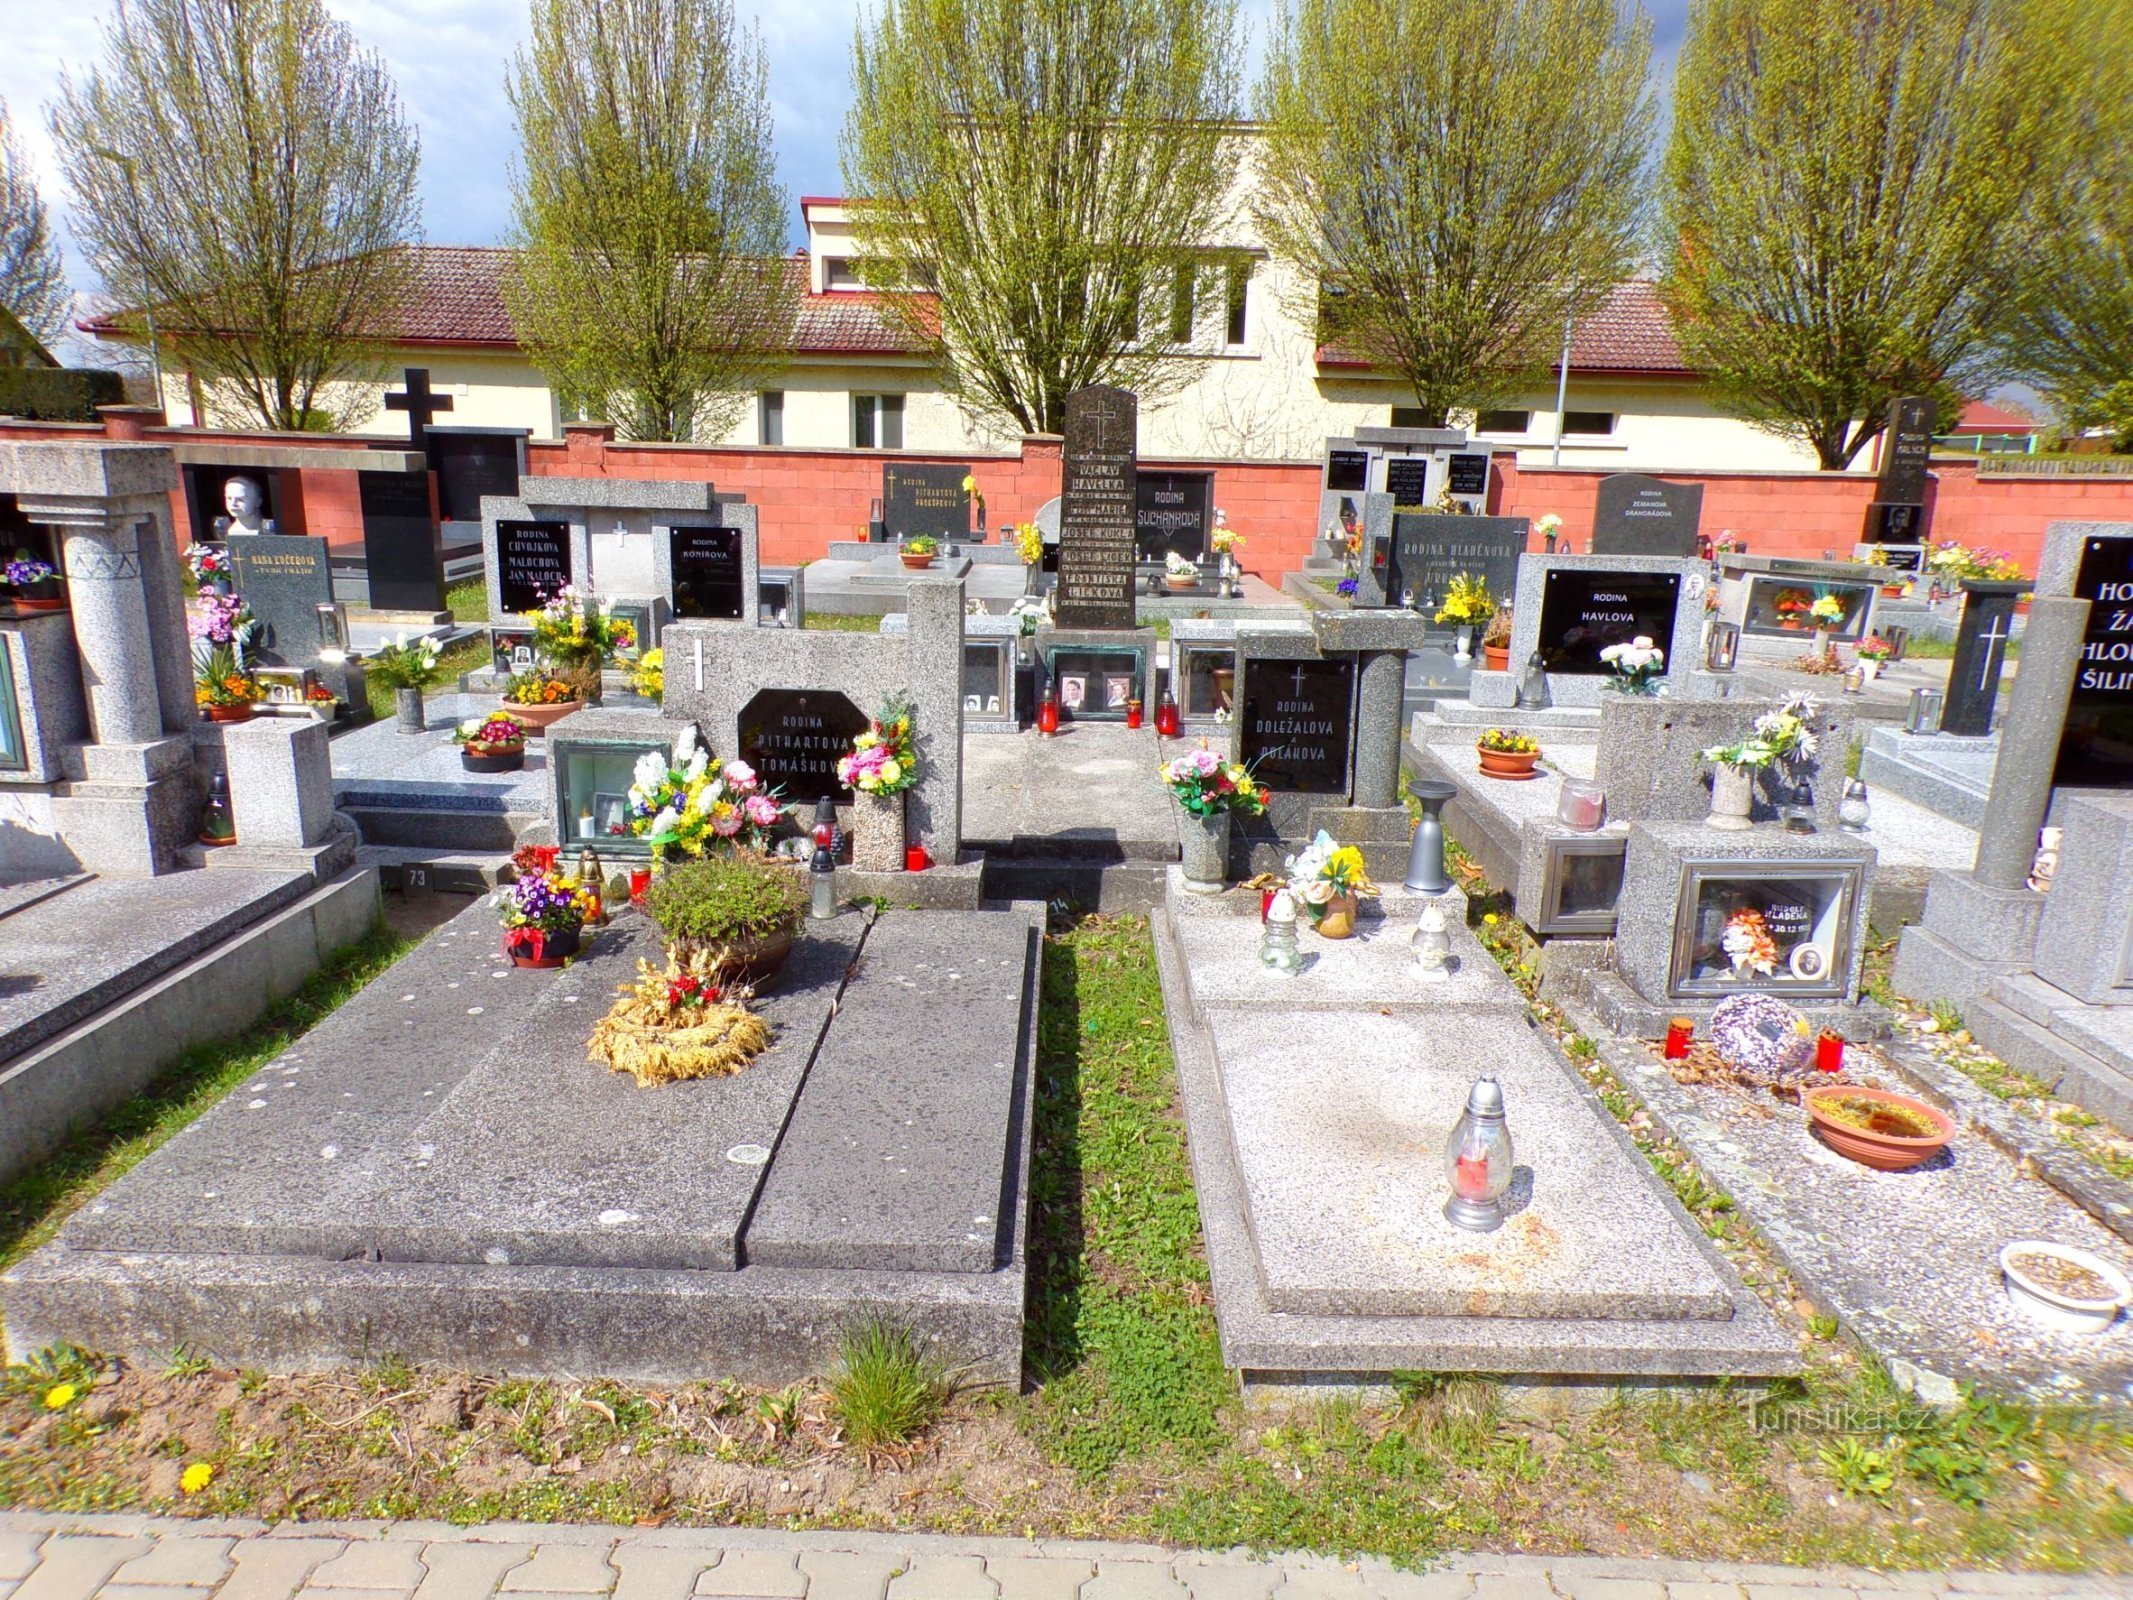 Nghĩa trang (Srch, 27.4.2022/XNUMX/XNUMX)